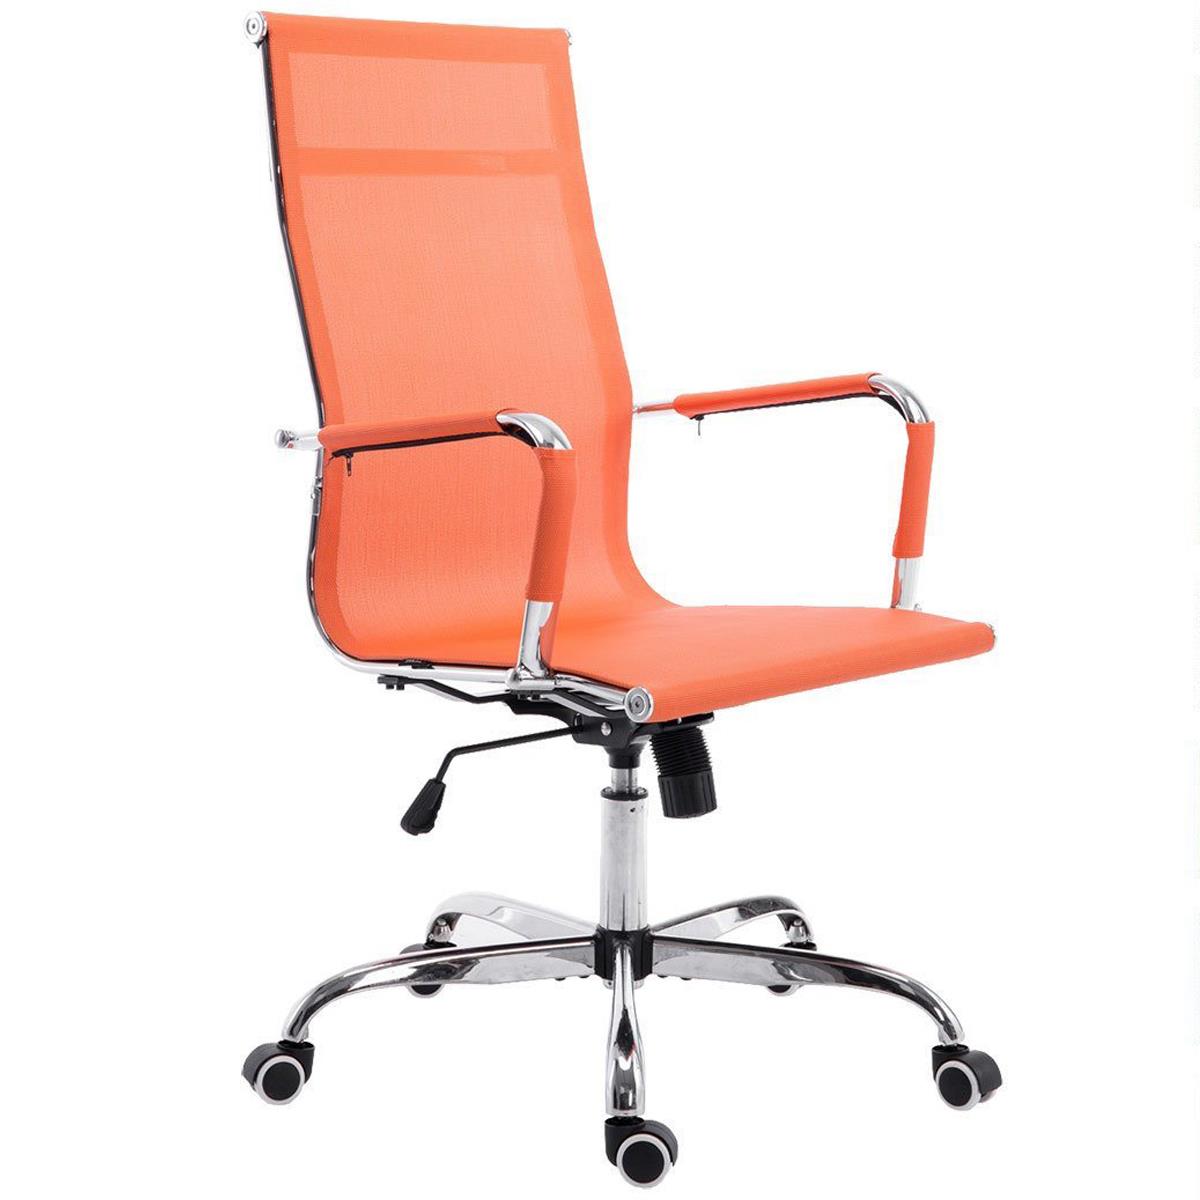 Chaise de bureau ITALIE, Structure Métallique, Magnifique Design en Maille Respirable, Orange